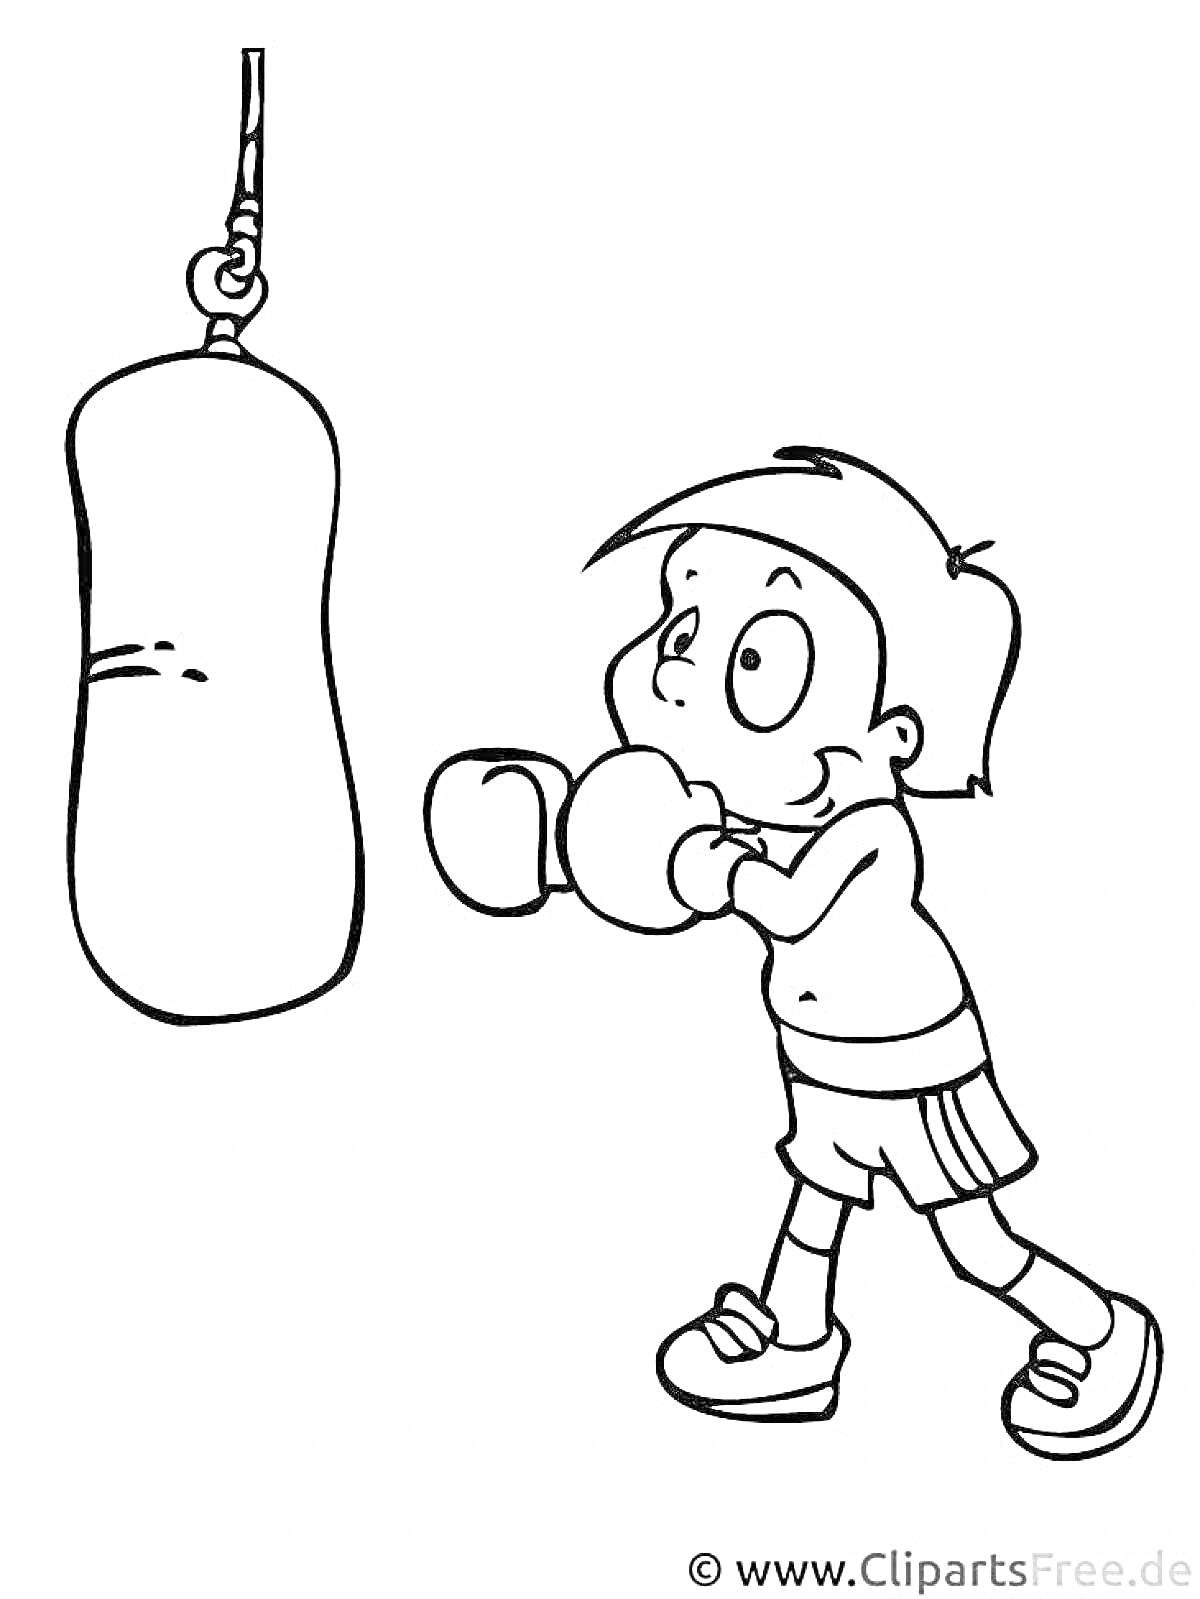 Ребенок в боксерских перчатках бьет боксерскую грушу